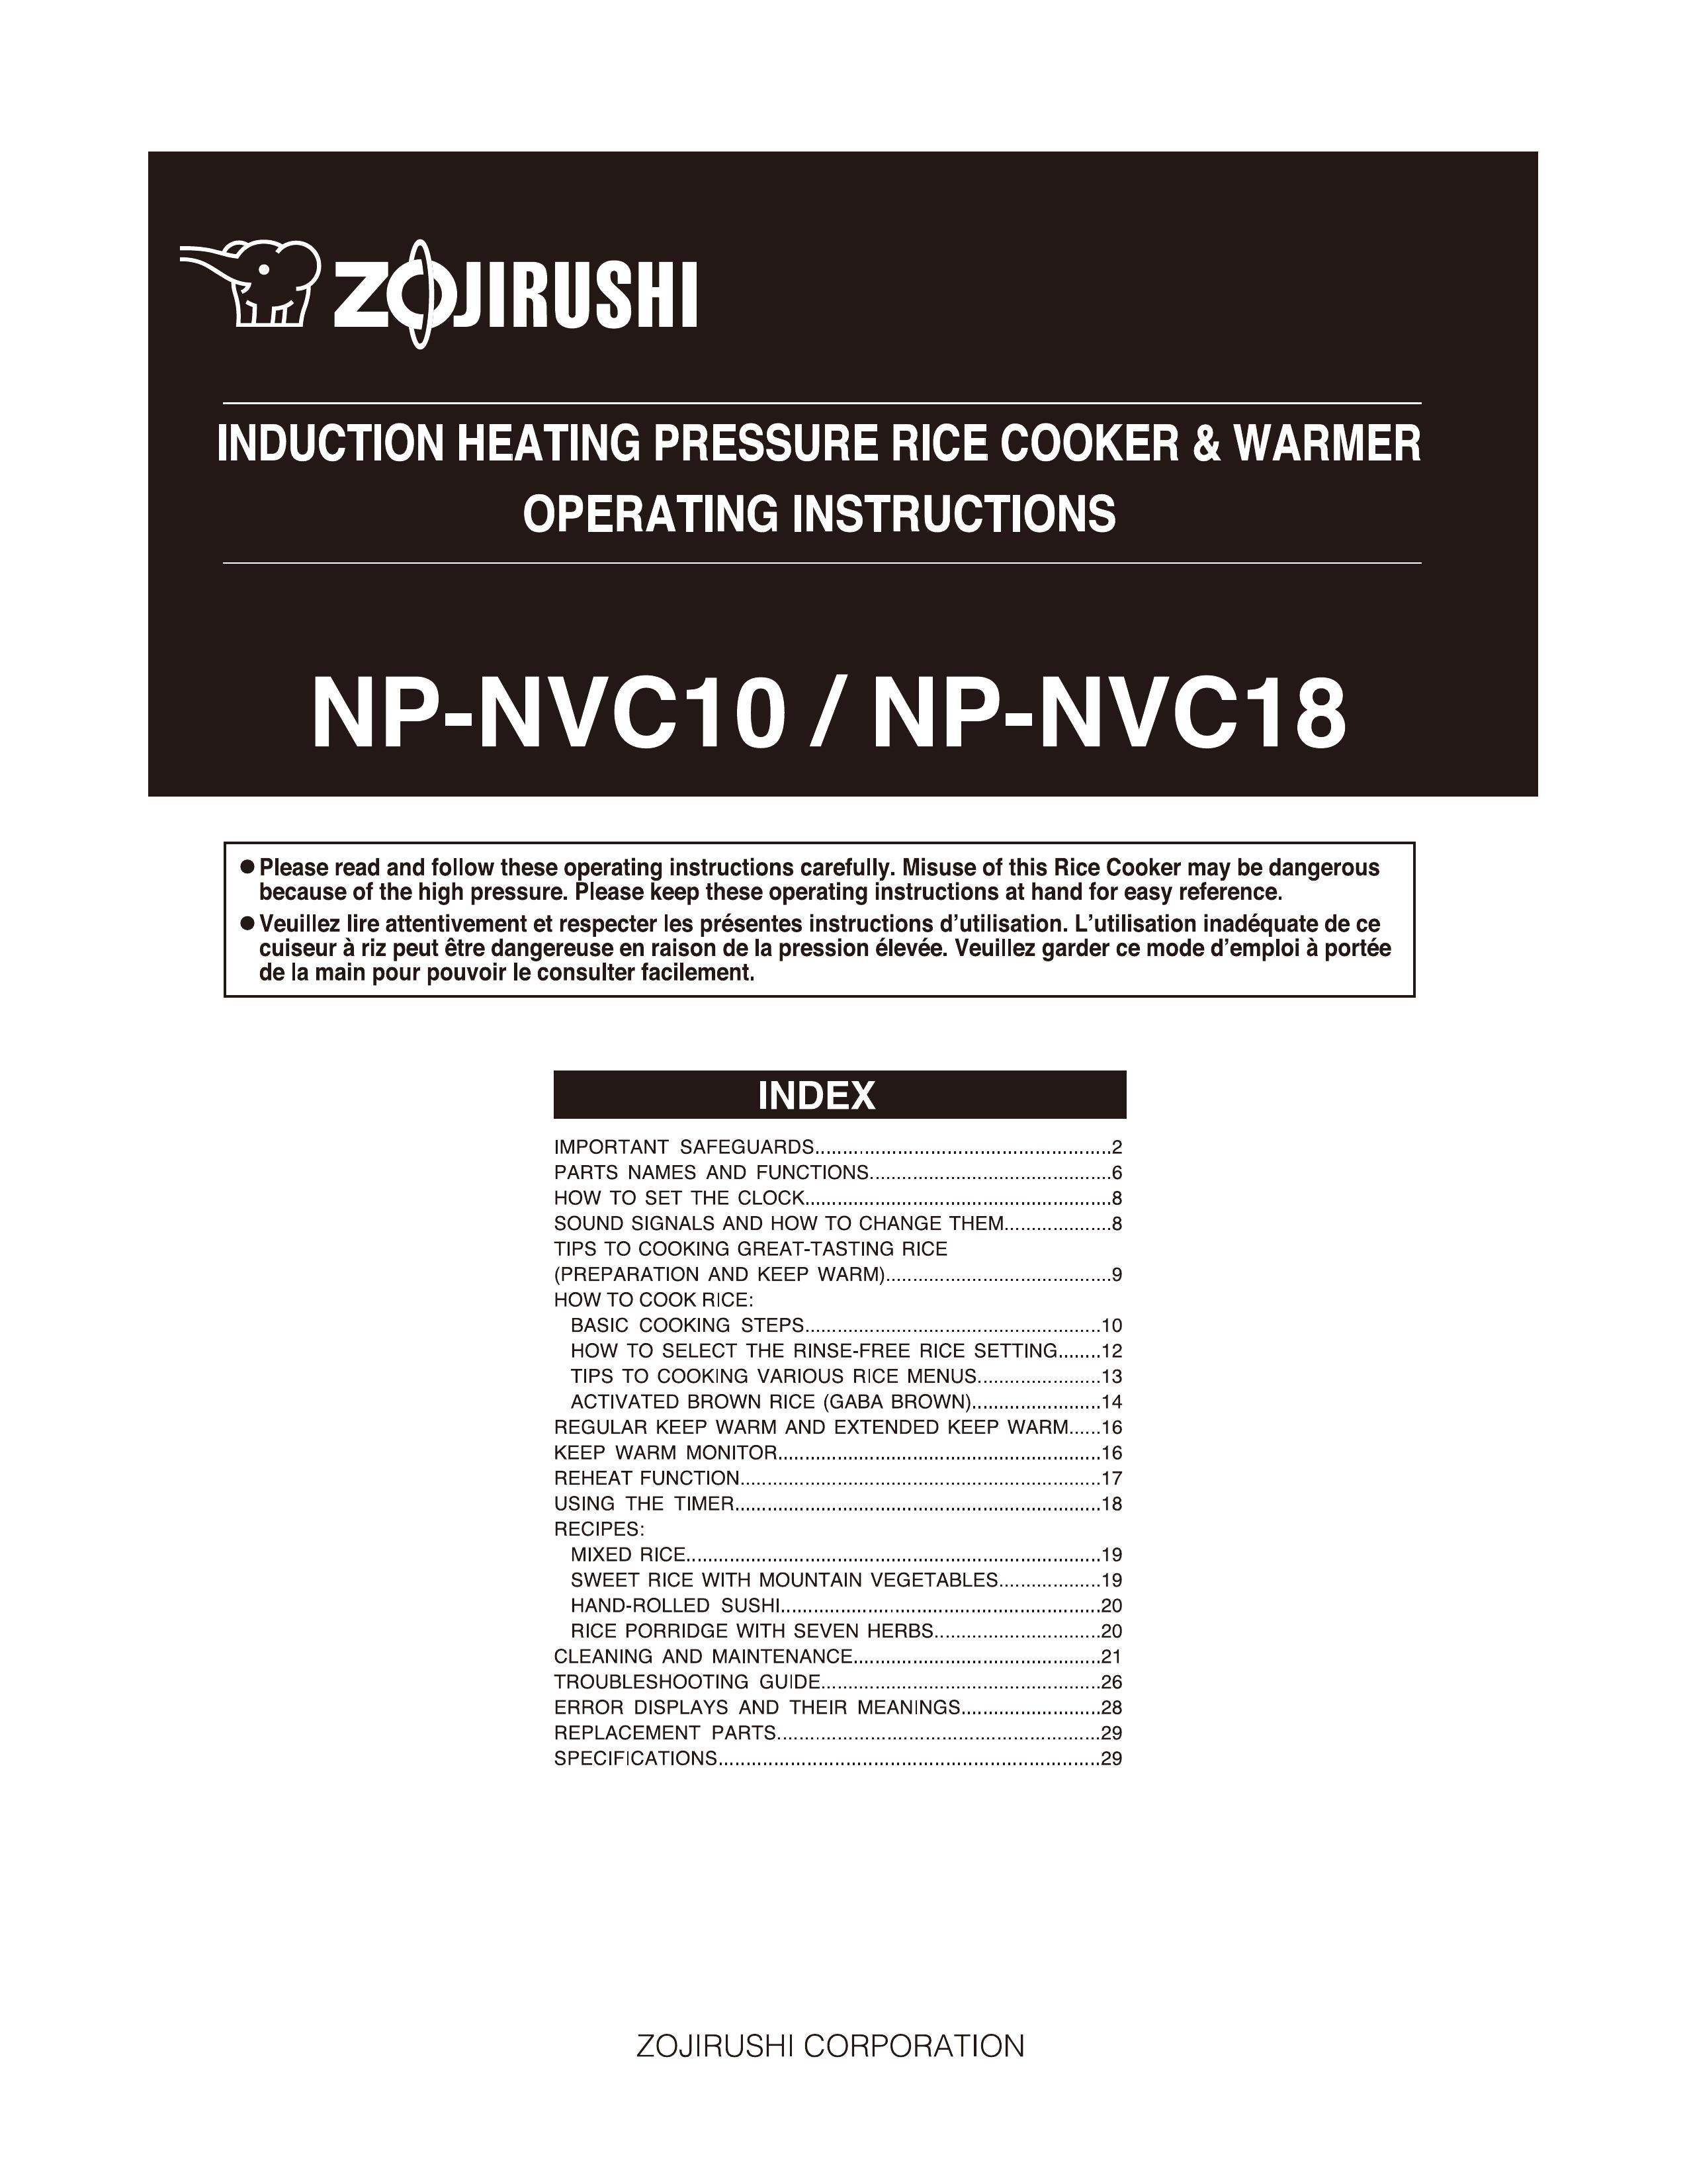 Zojirushi NP-NVC10 Rice Cooker User Manual